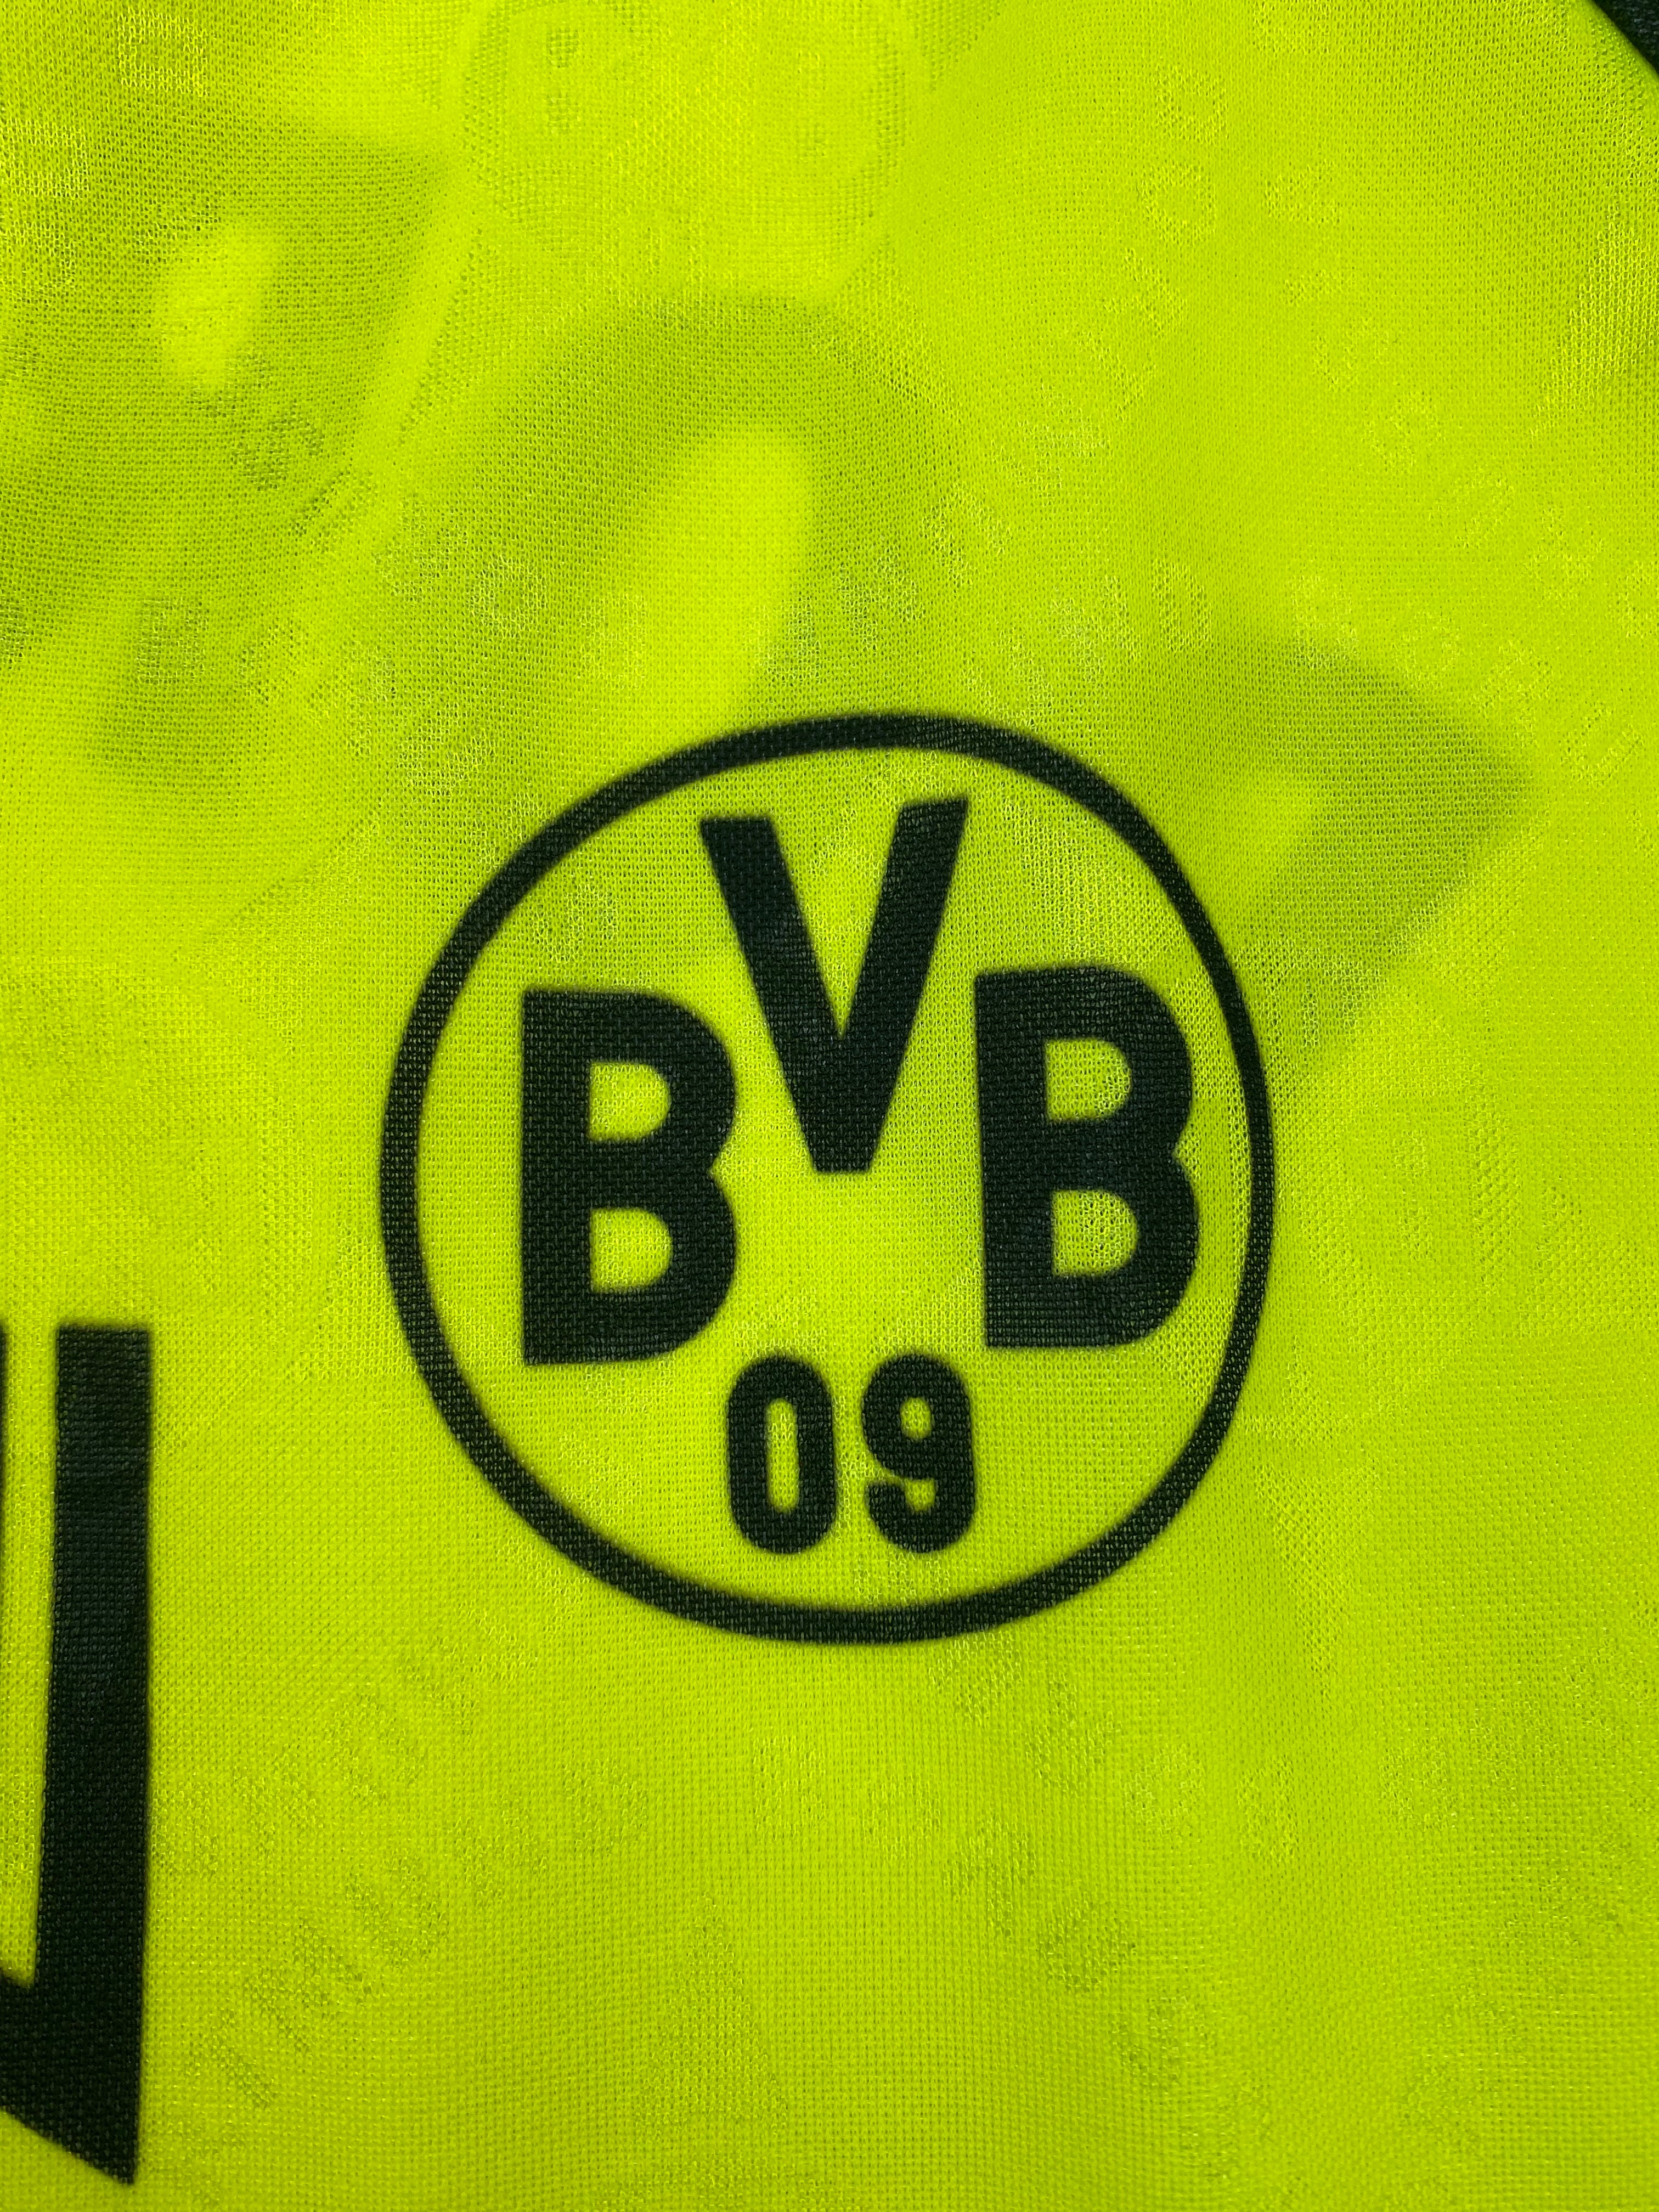 1994/95 Borussia Dortmund Domicile L/S Maillot (XL) 9/10